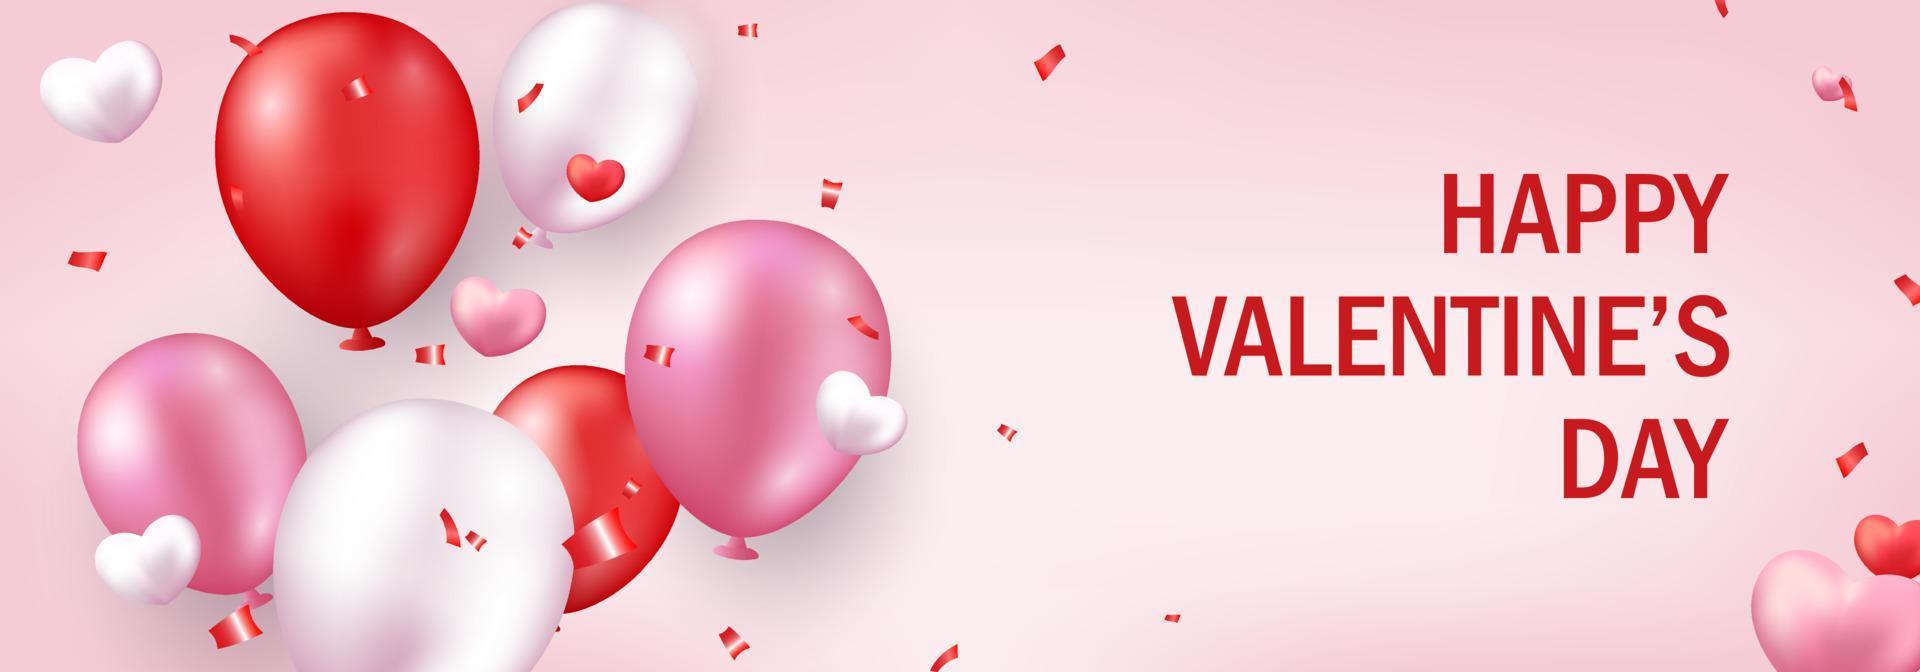 Valentinstag-Banner. romantisches Design mit realistischen festlichen Objekten, realistischen Luftballons, Herzen, Glitzerkonfetti. festliches horizontales Poster vektor